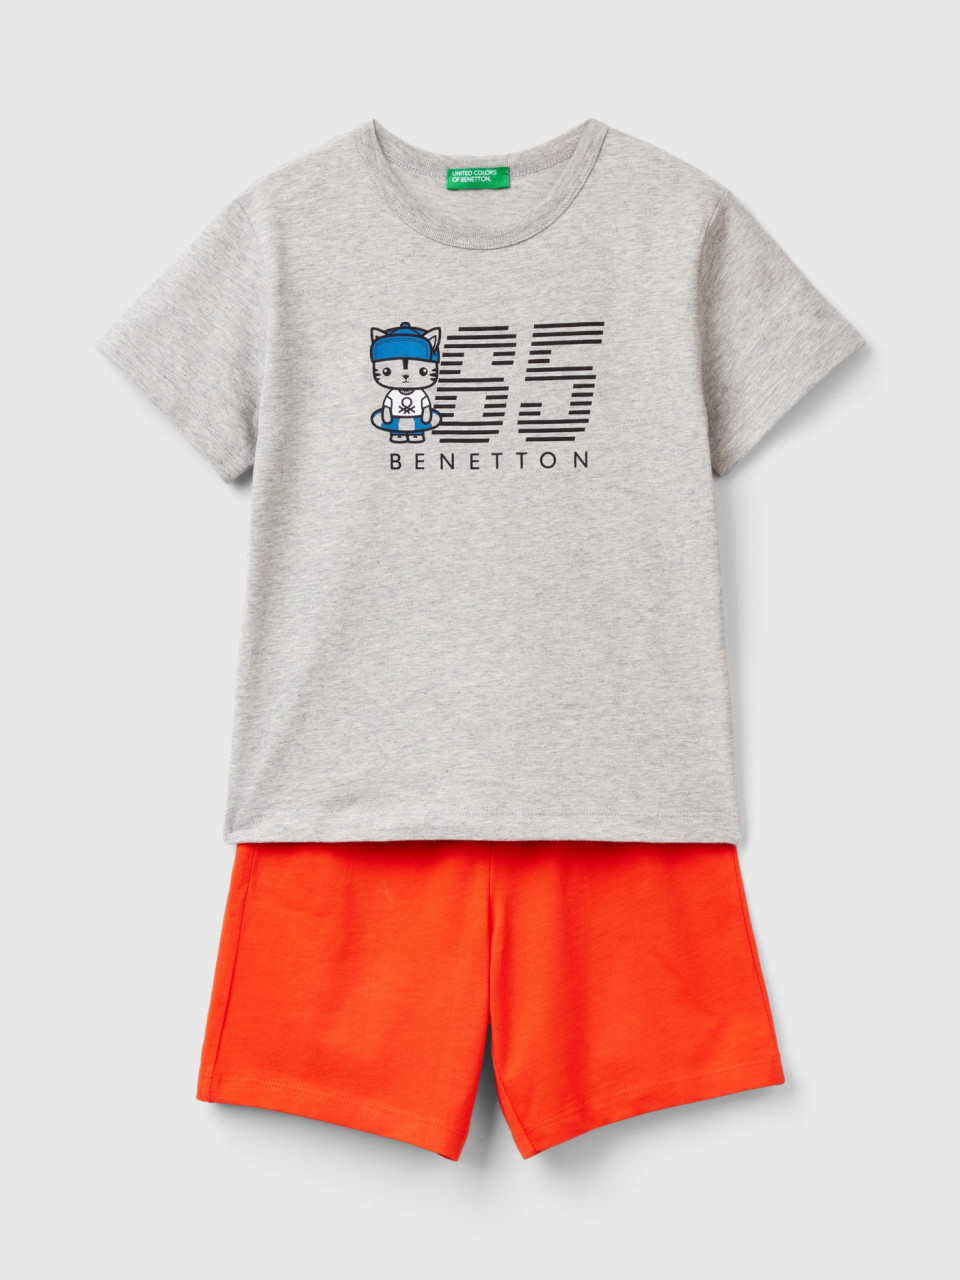 Benetton, Ensemble T-shirt Et Bermuda 100 % Coton, Gris Clair, Enfants